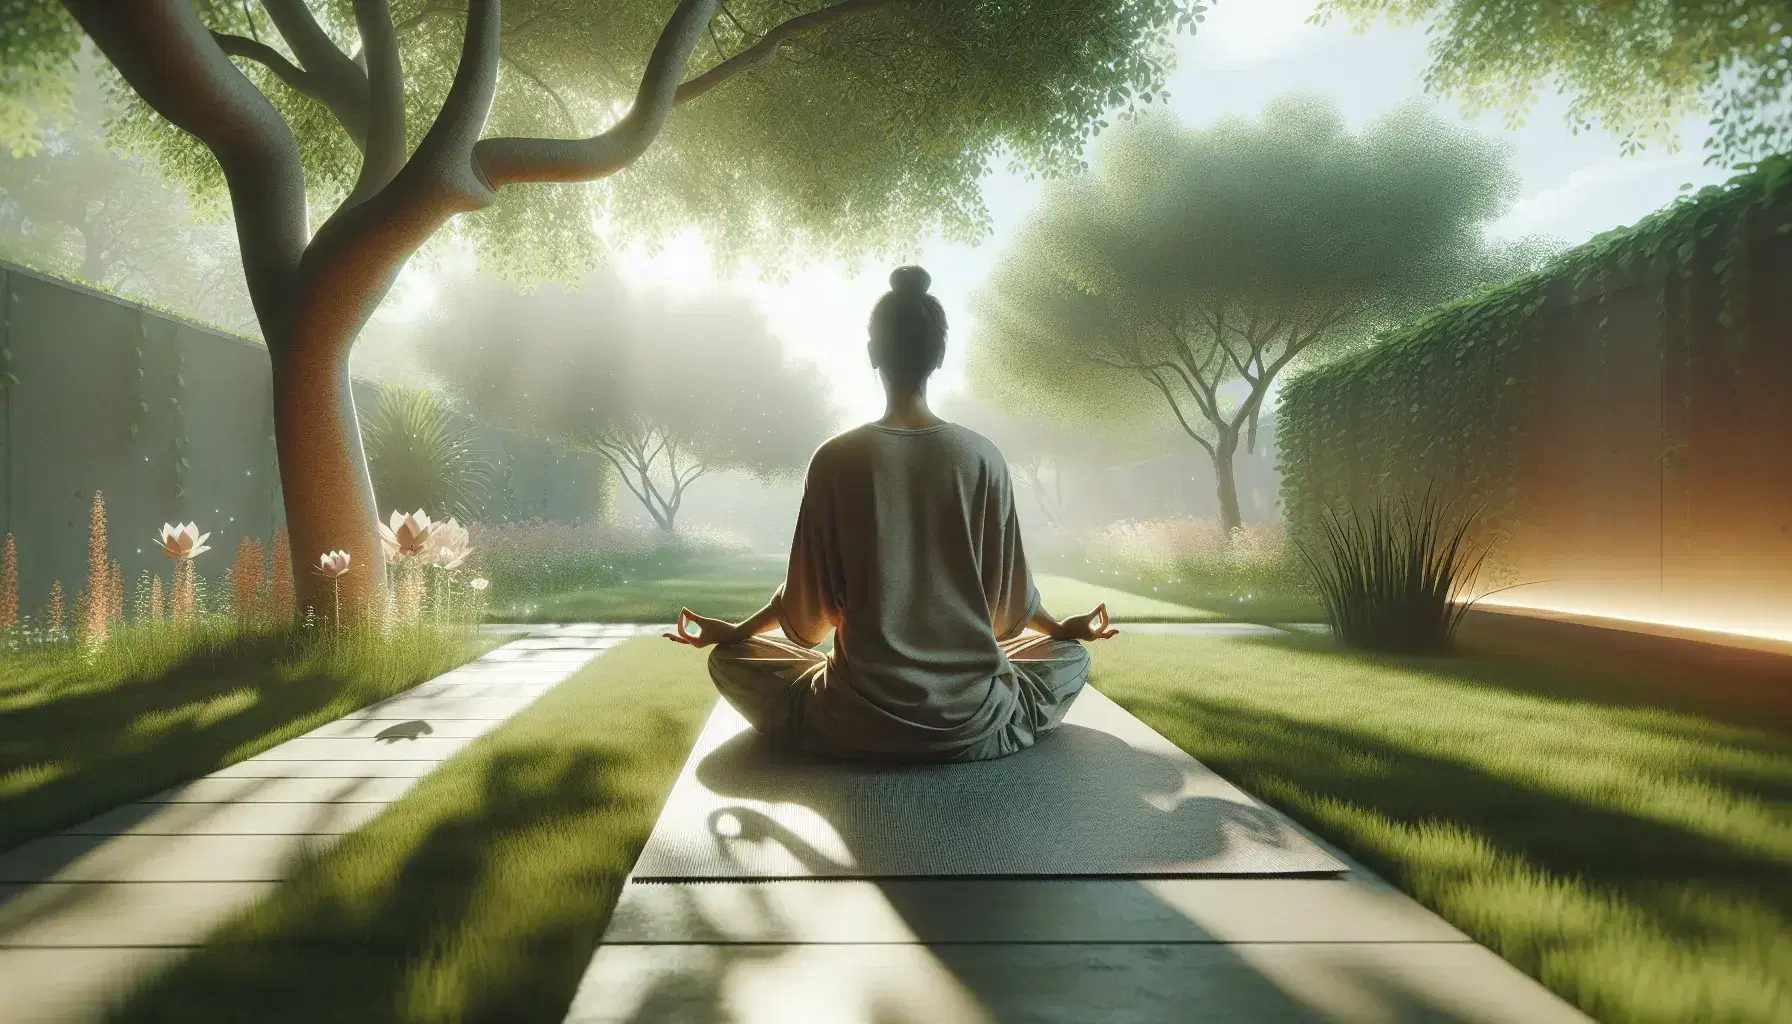 Persona meditando en postura de loto sobre una esterilla de yoga en un entorno natural tranquilo, con árboles y flores suaves, bajo la luz del sol.